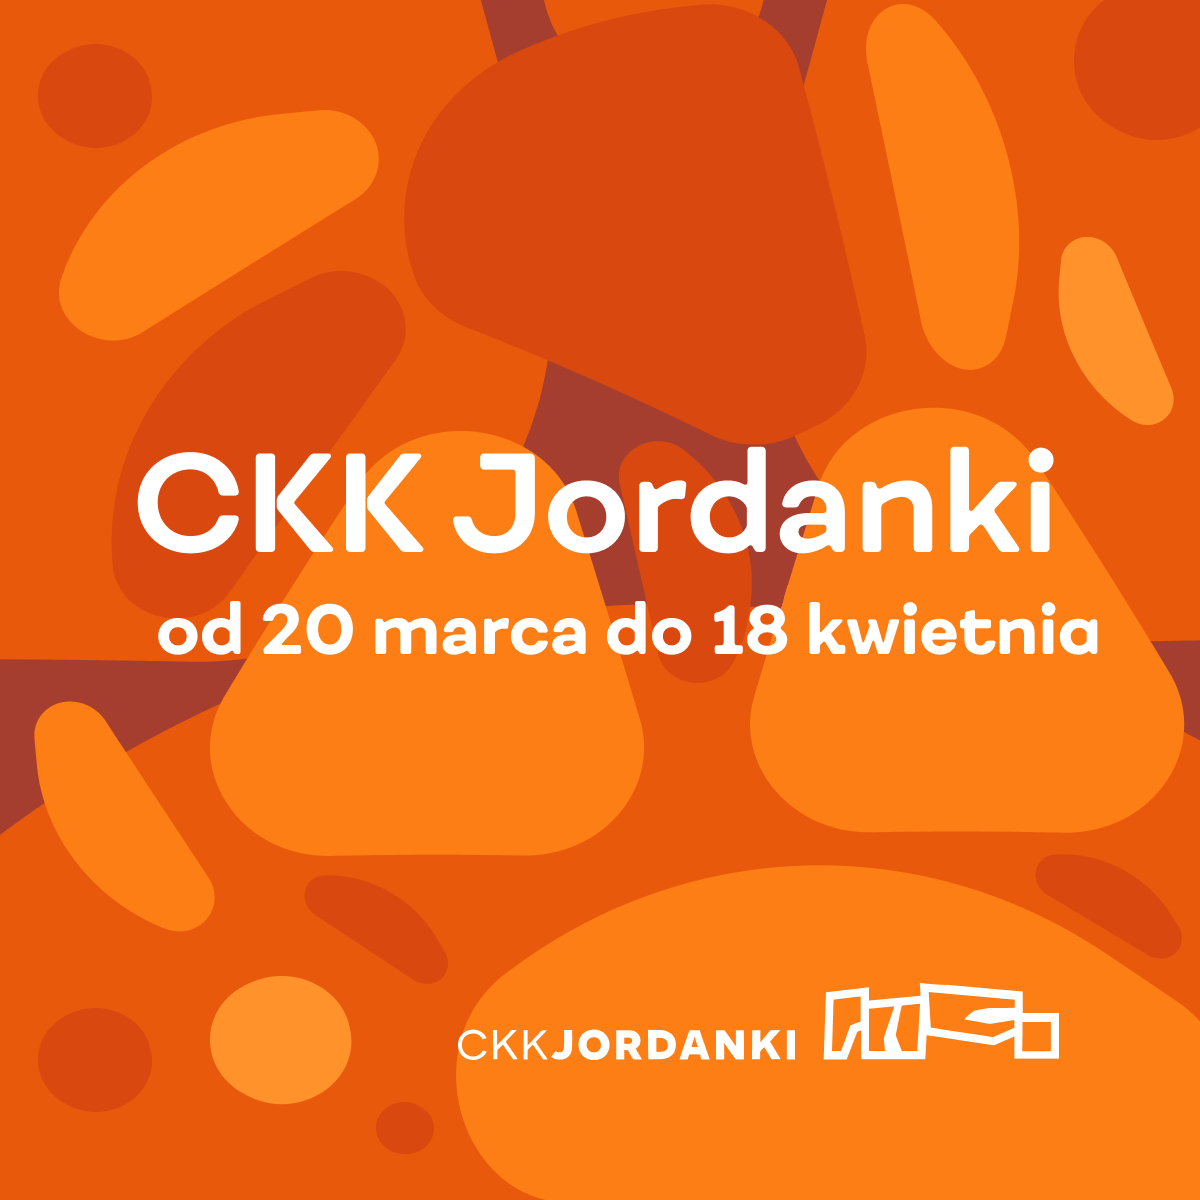 CKK Jordanki od 20 marca do 9 kwietnia 2021